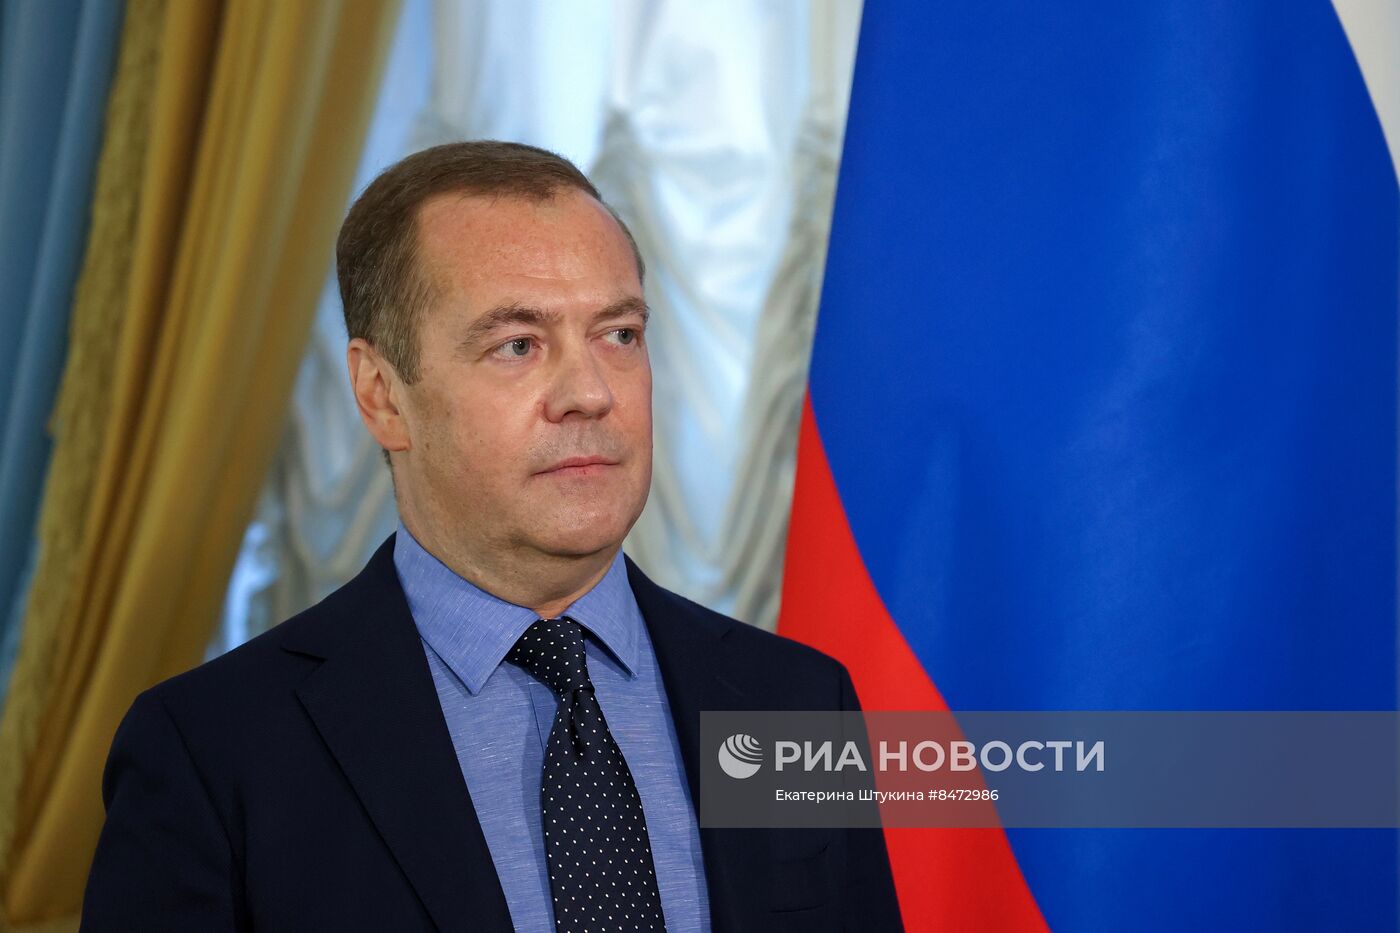 Зампред Совбеза РФ Д. Медведев ответил на вопросы журналистов